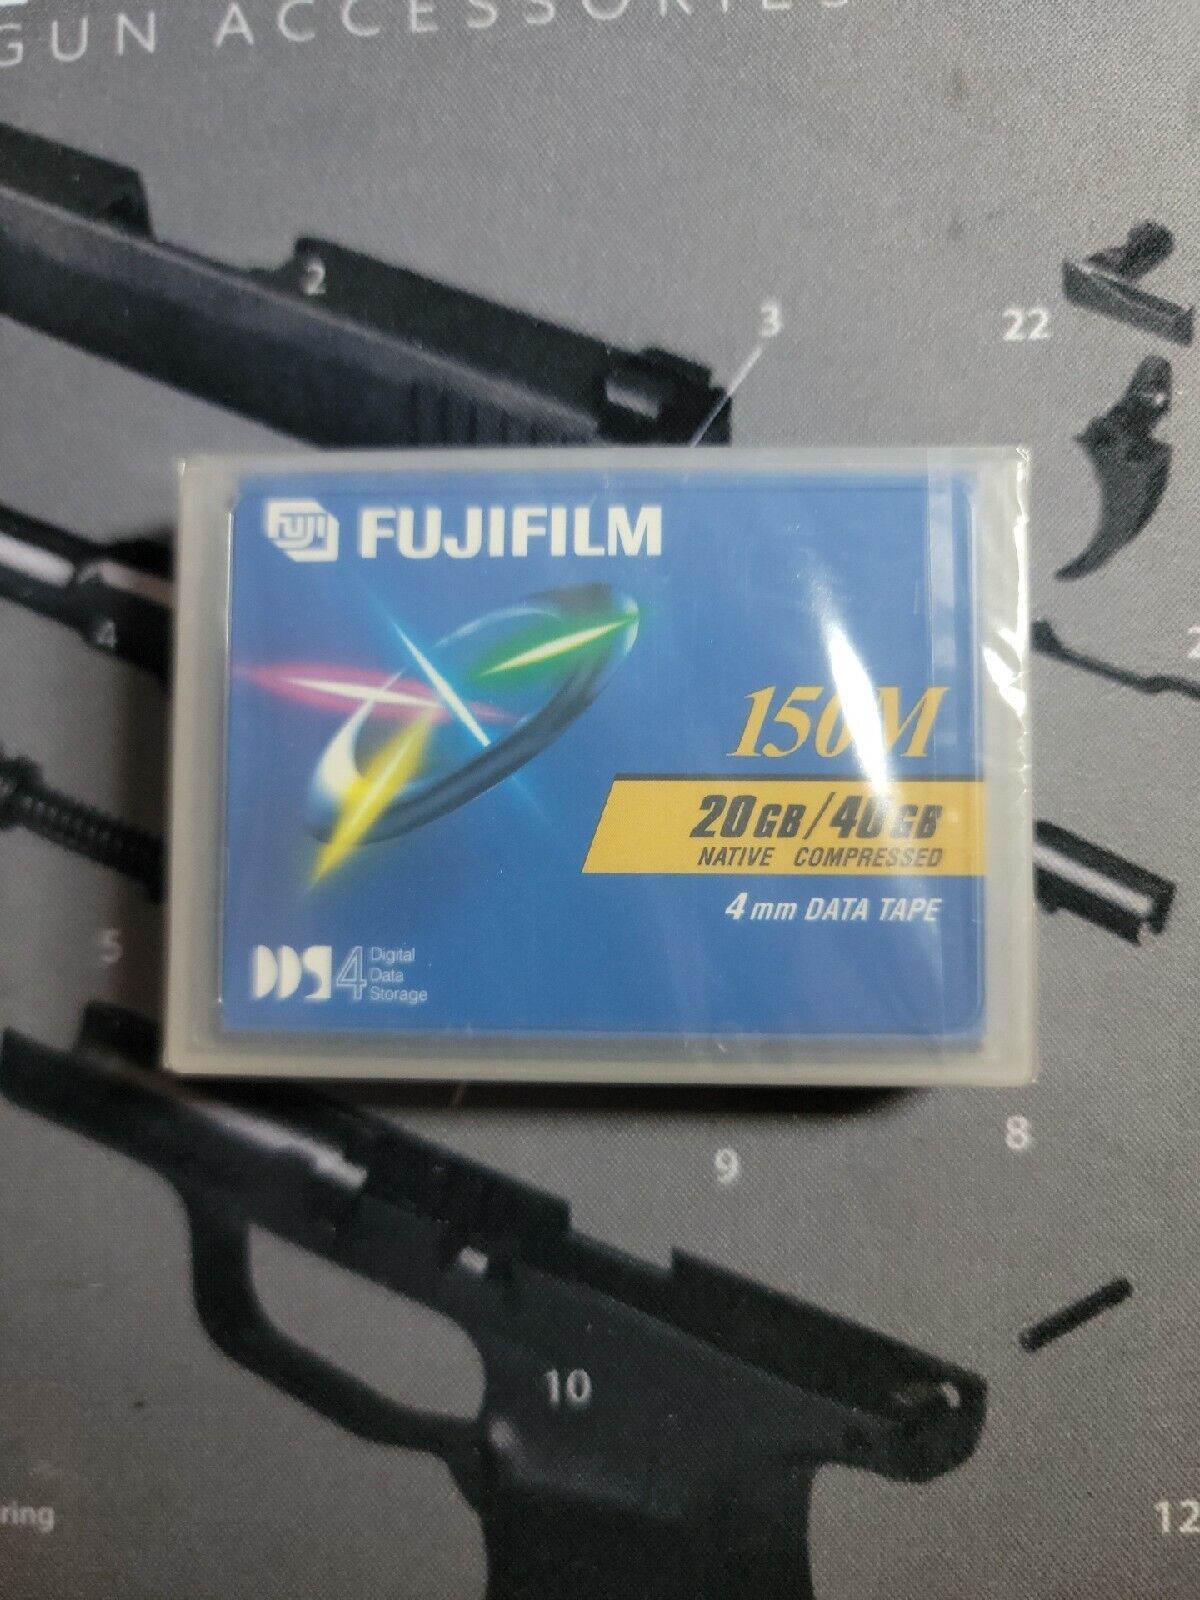 Fujifilm 150M DAT DDS 4mm Data Tape 20GB/40GB Cartridge 074101784015